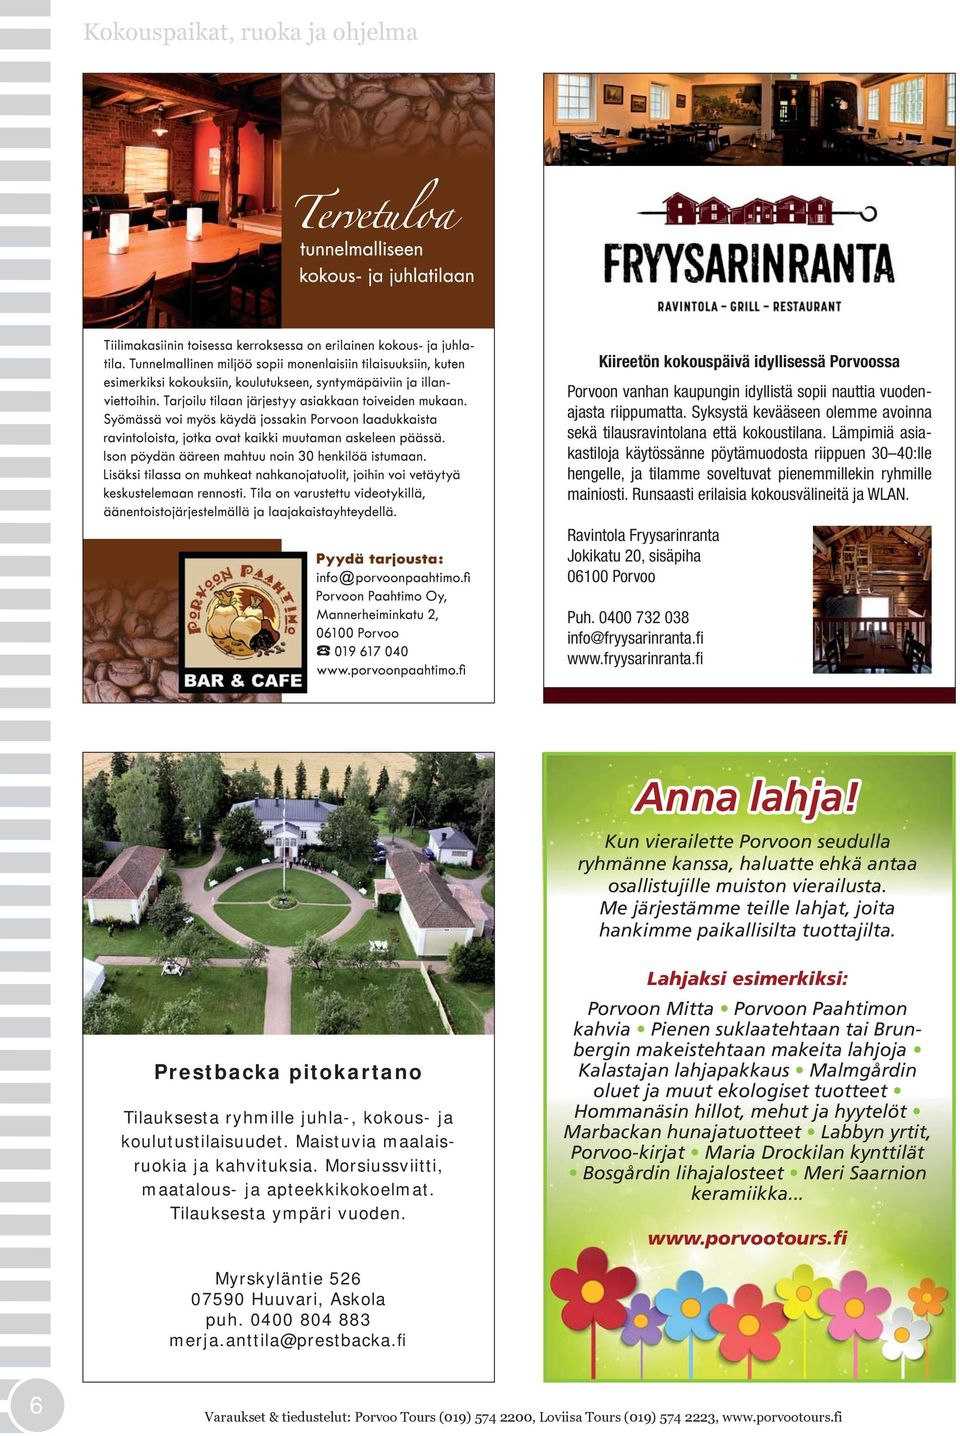 Ravintola Fryysarinranta Jokikatu 20, sisäpiha 06100 Porvoo Puh. 0400 732 038 info@fryysarinranta.fi www.fryysarinranta.fi Anna lahja!